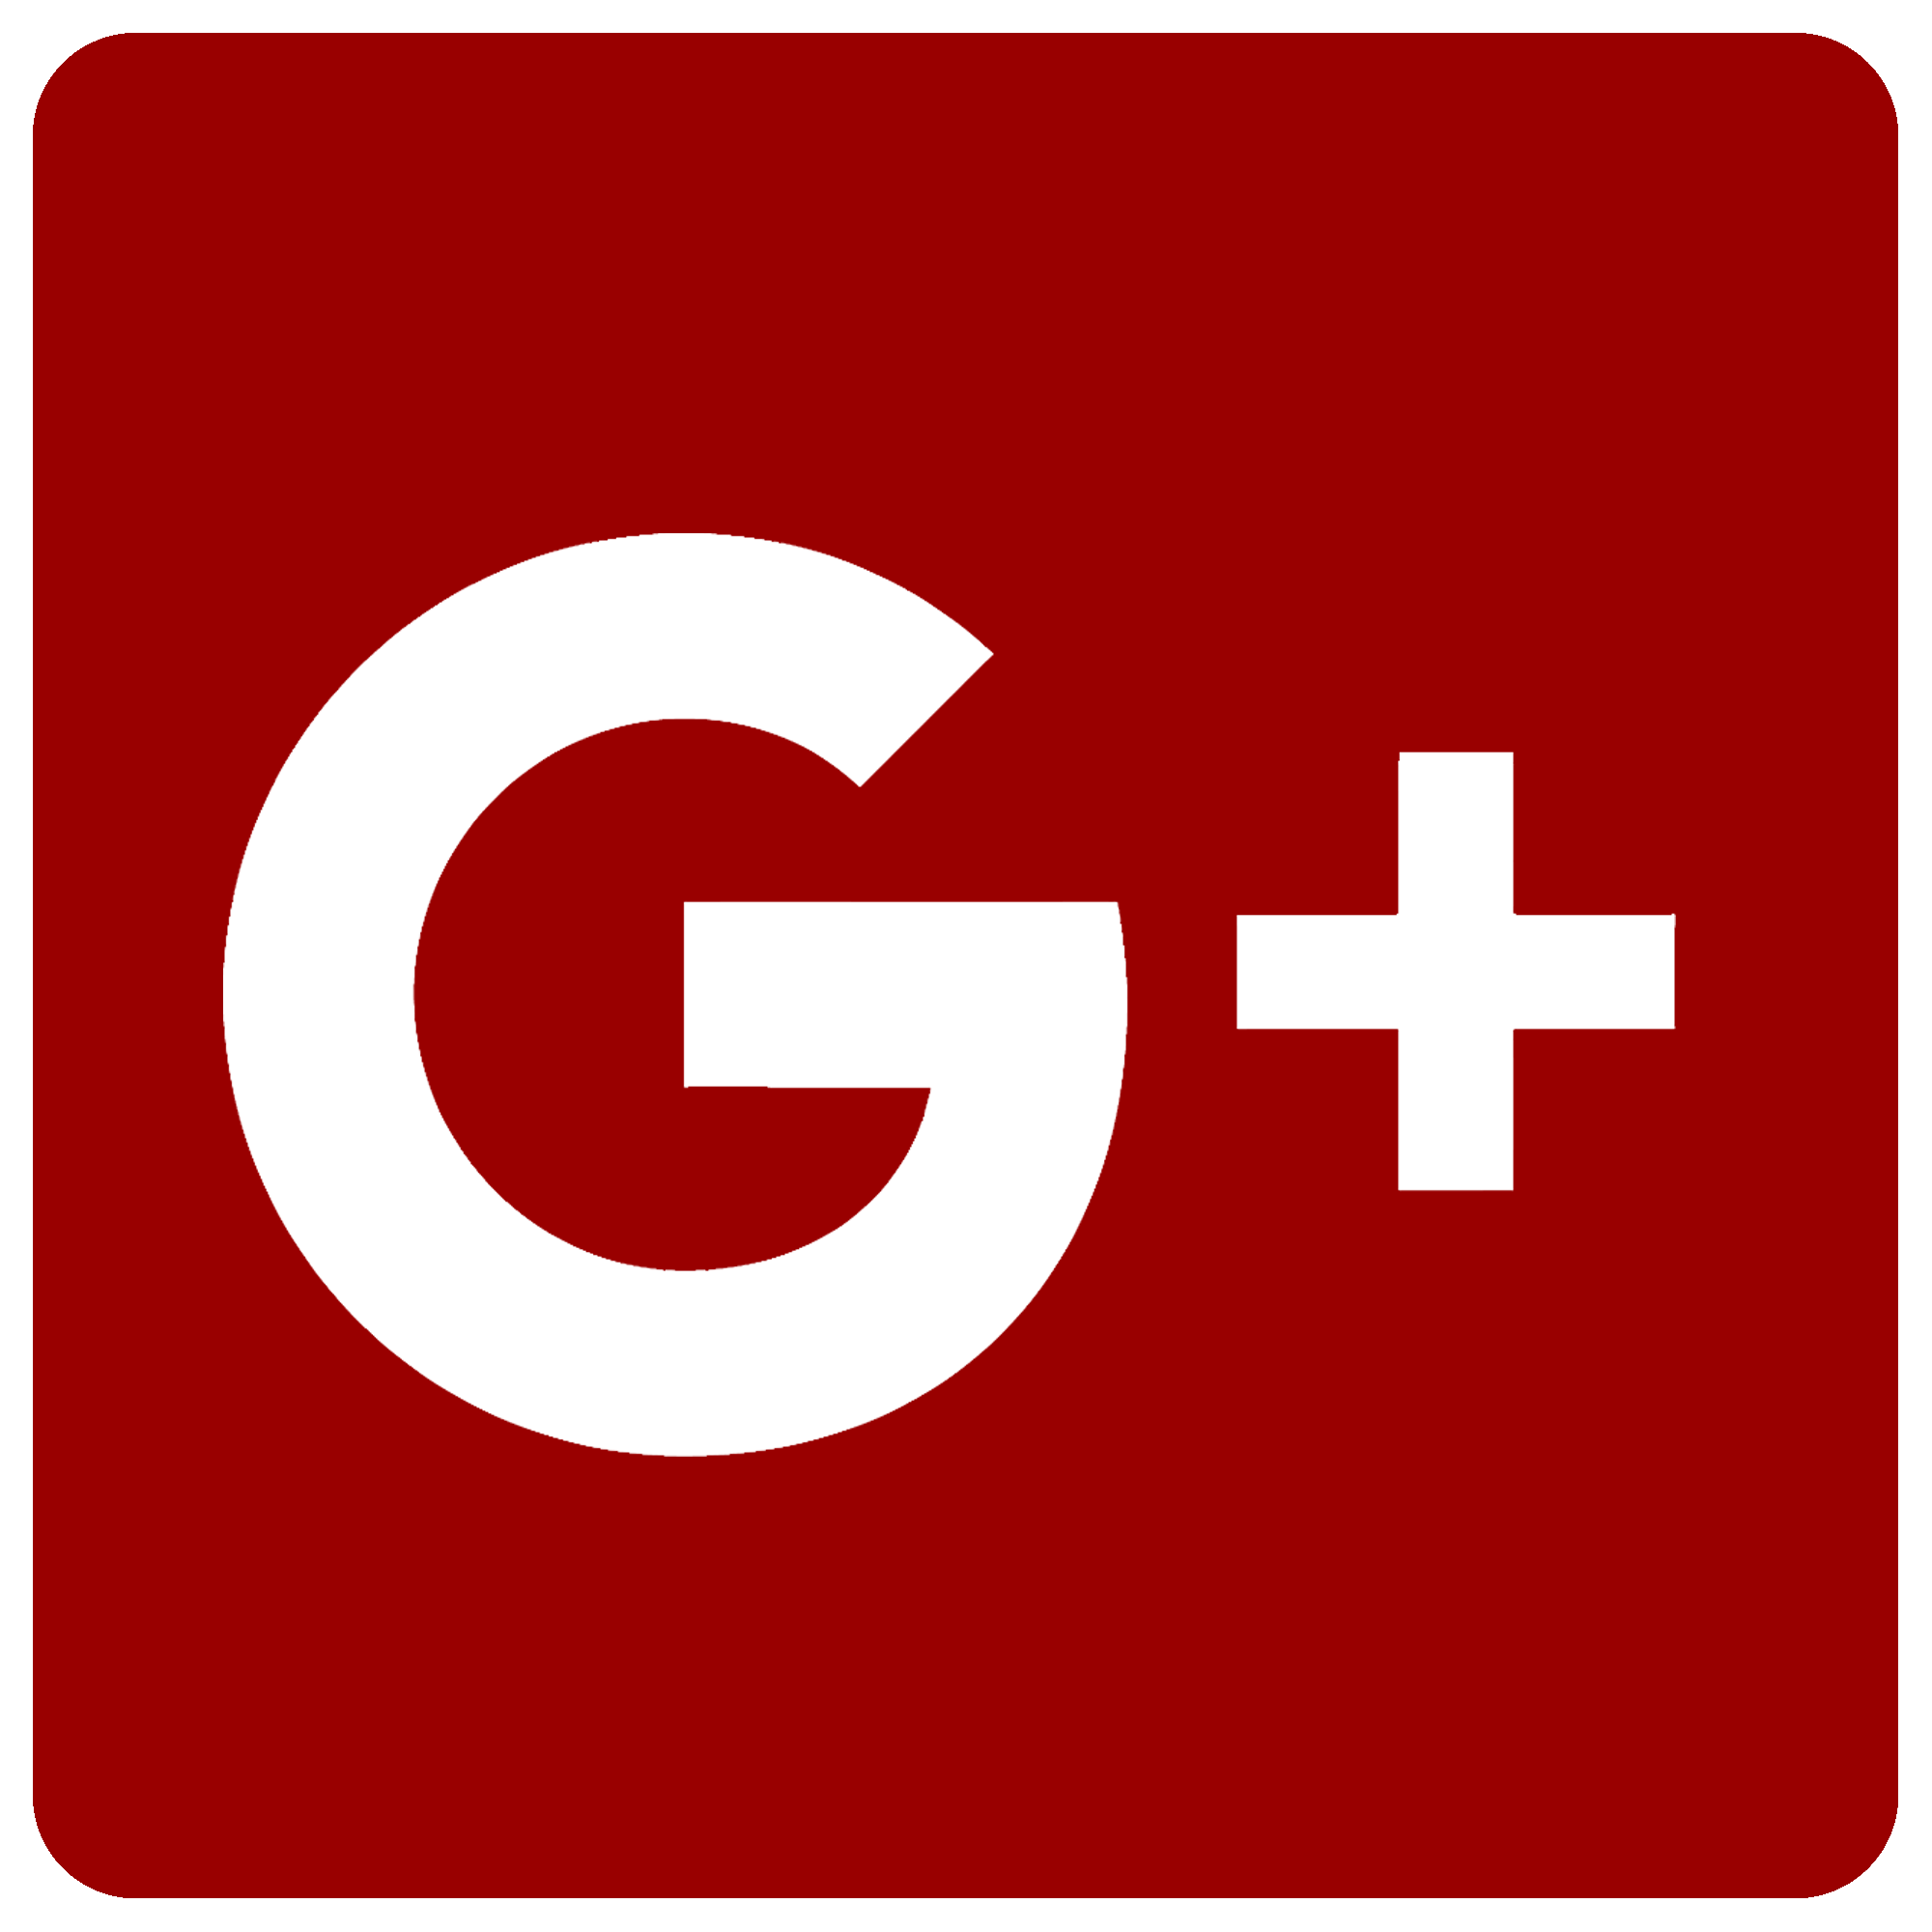 Data leak pulls the plug on Google+